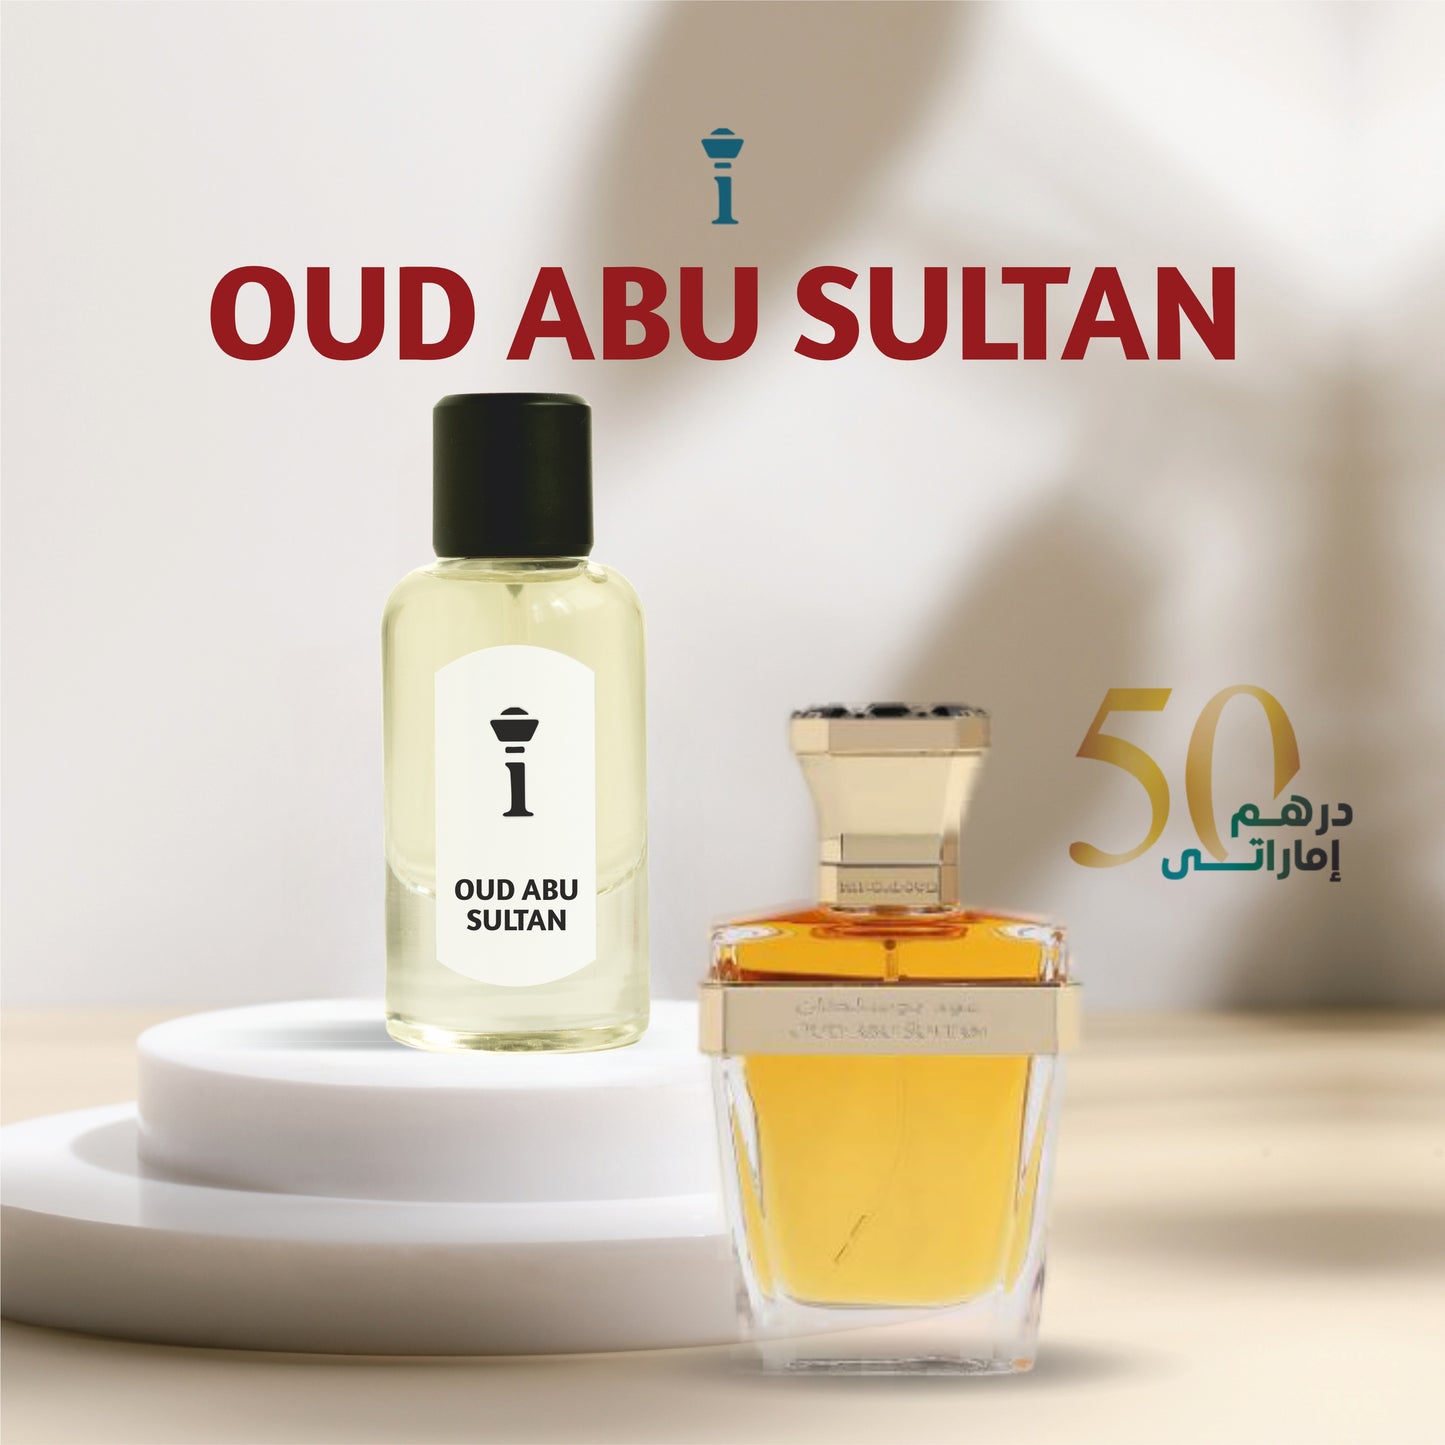 Oud Abu Sultan